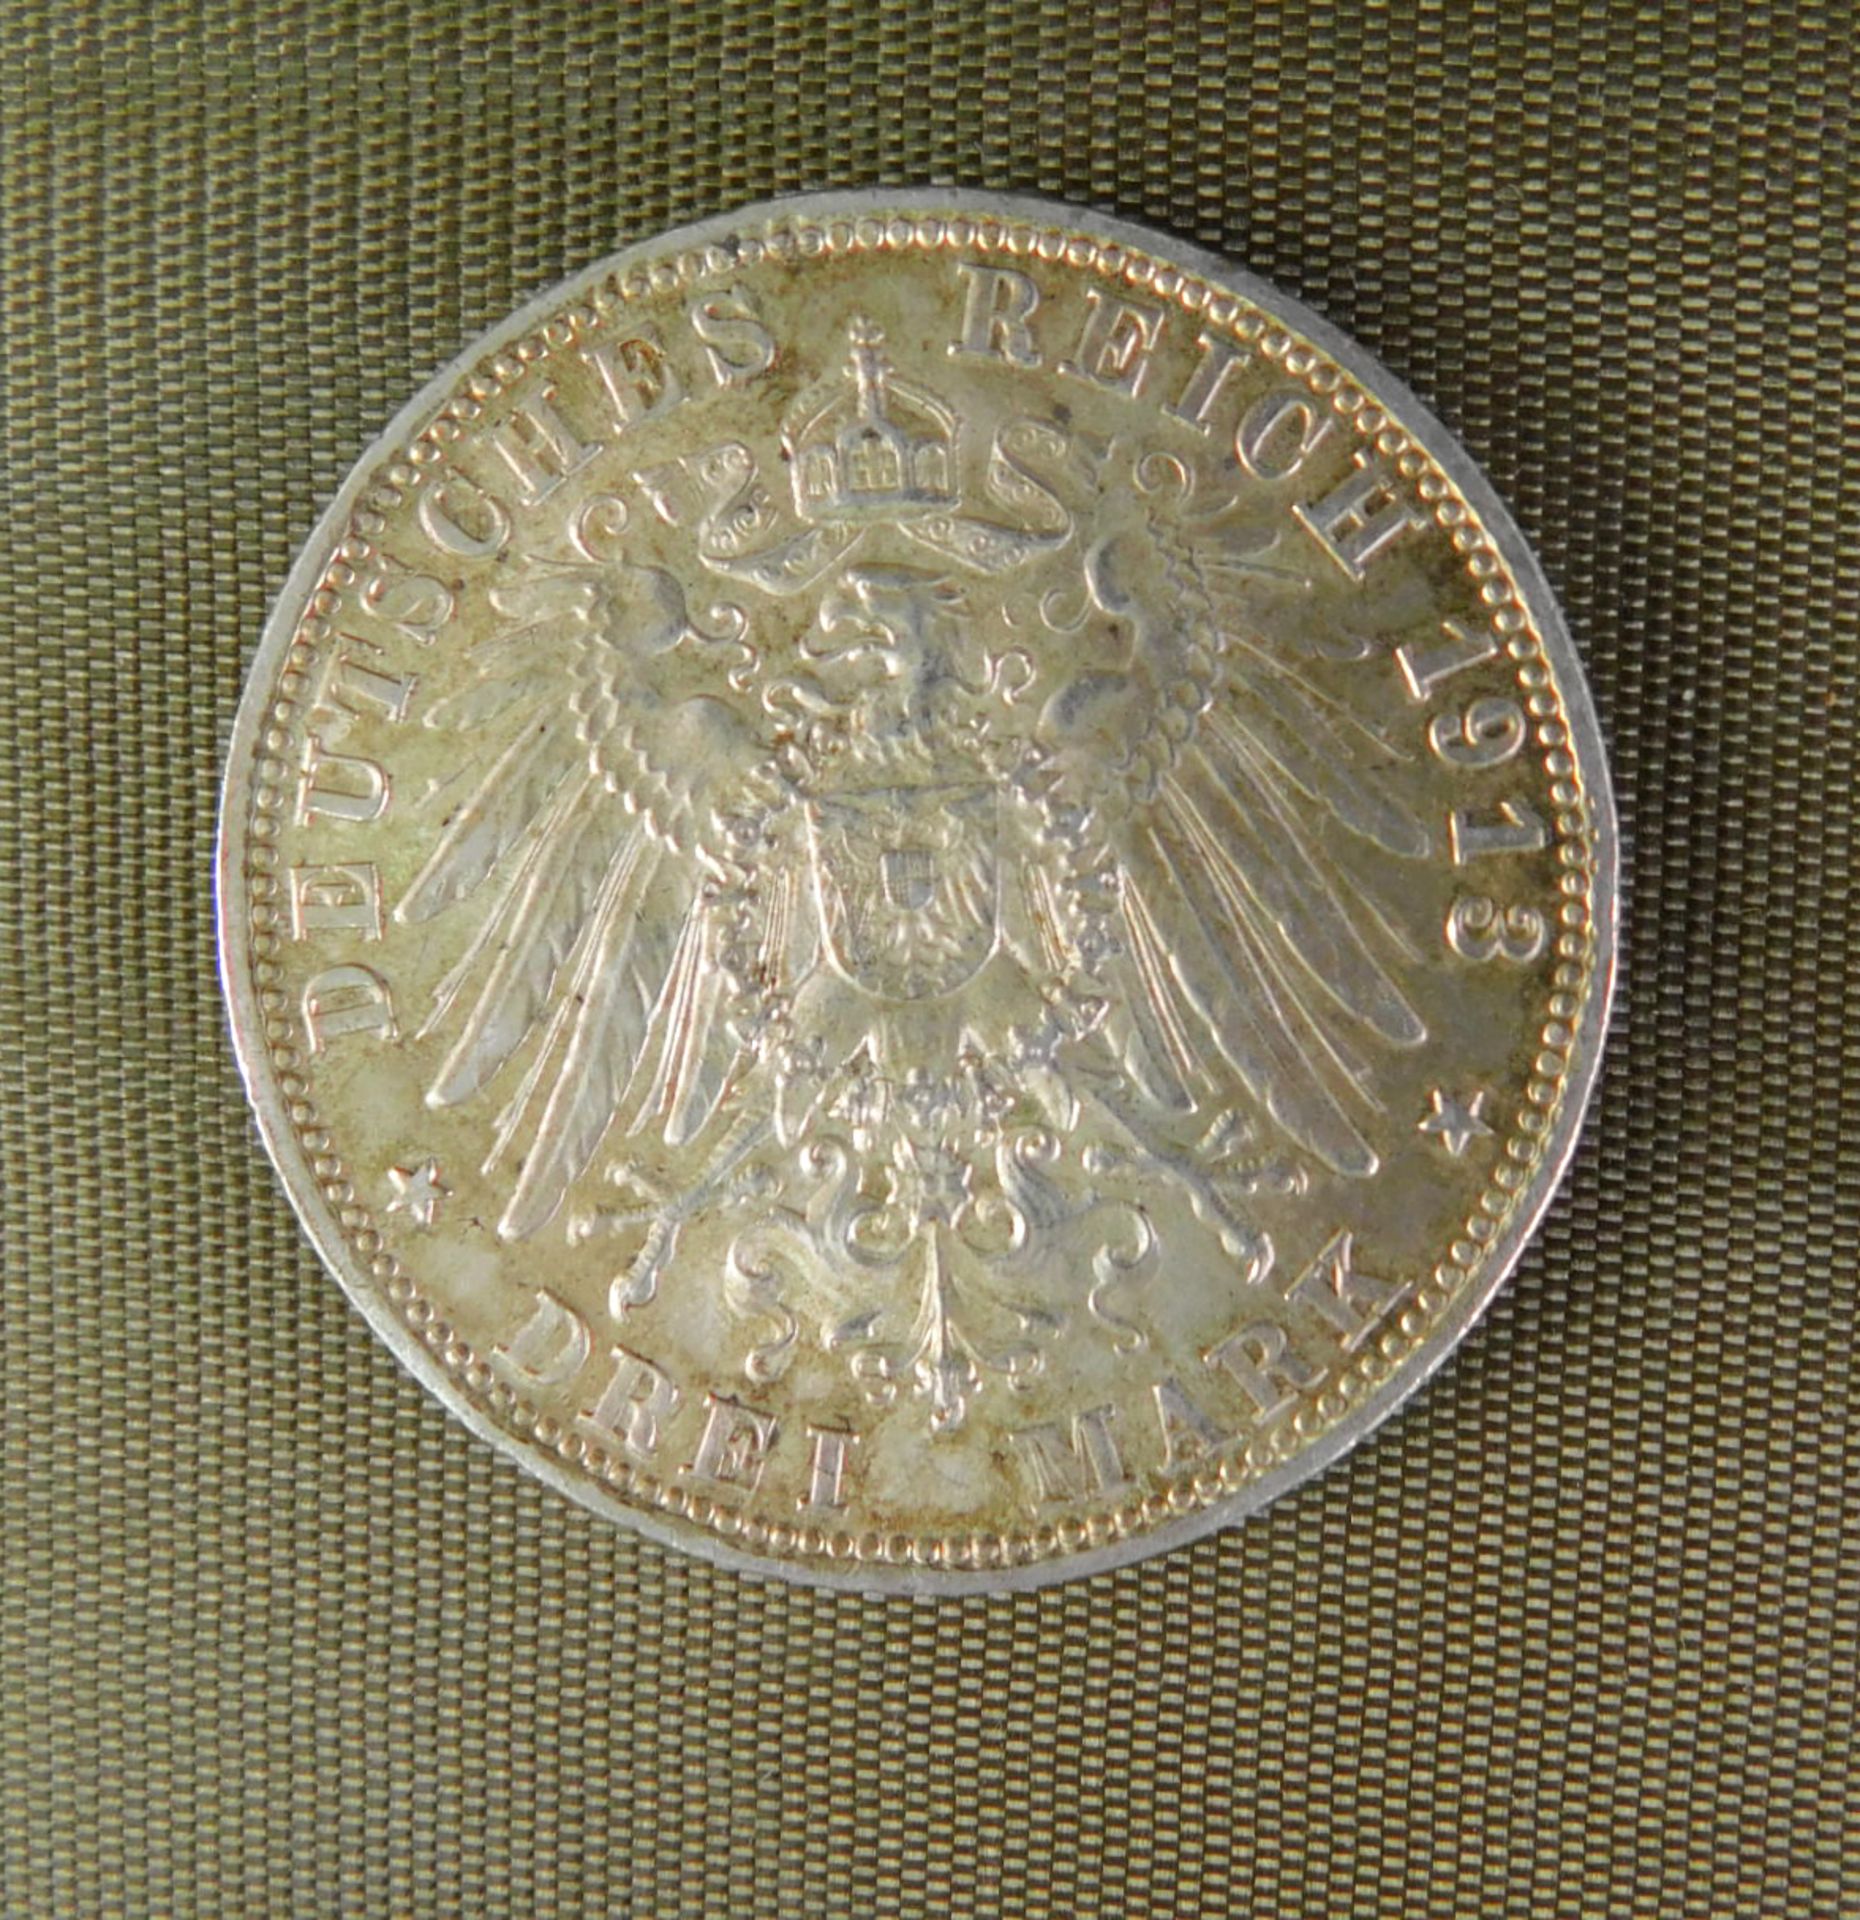 Silbermünze 3 Mark 1913 D, Deutsches Reich, Otto König von Bayern - Bild 2 aus 2